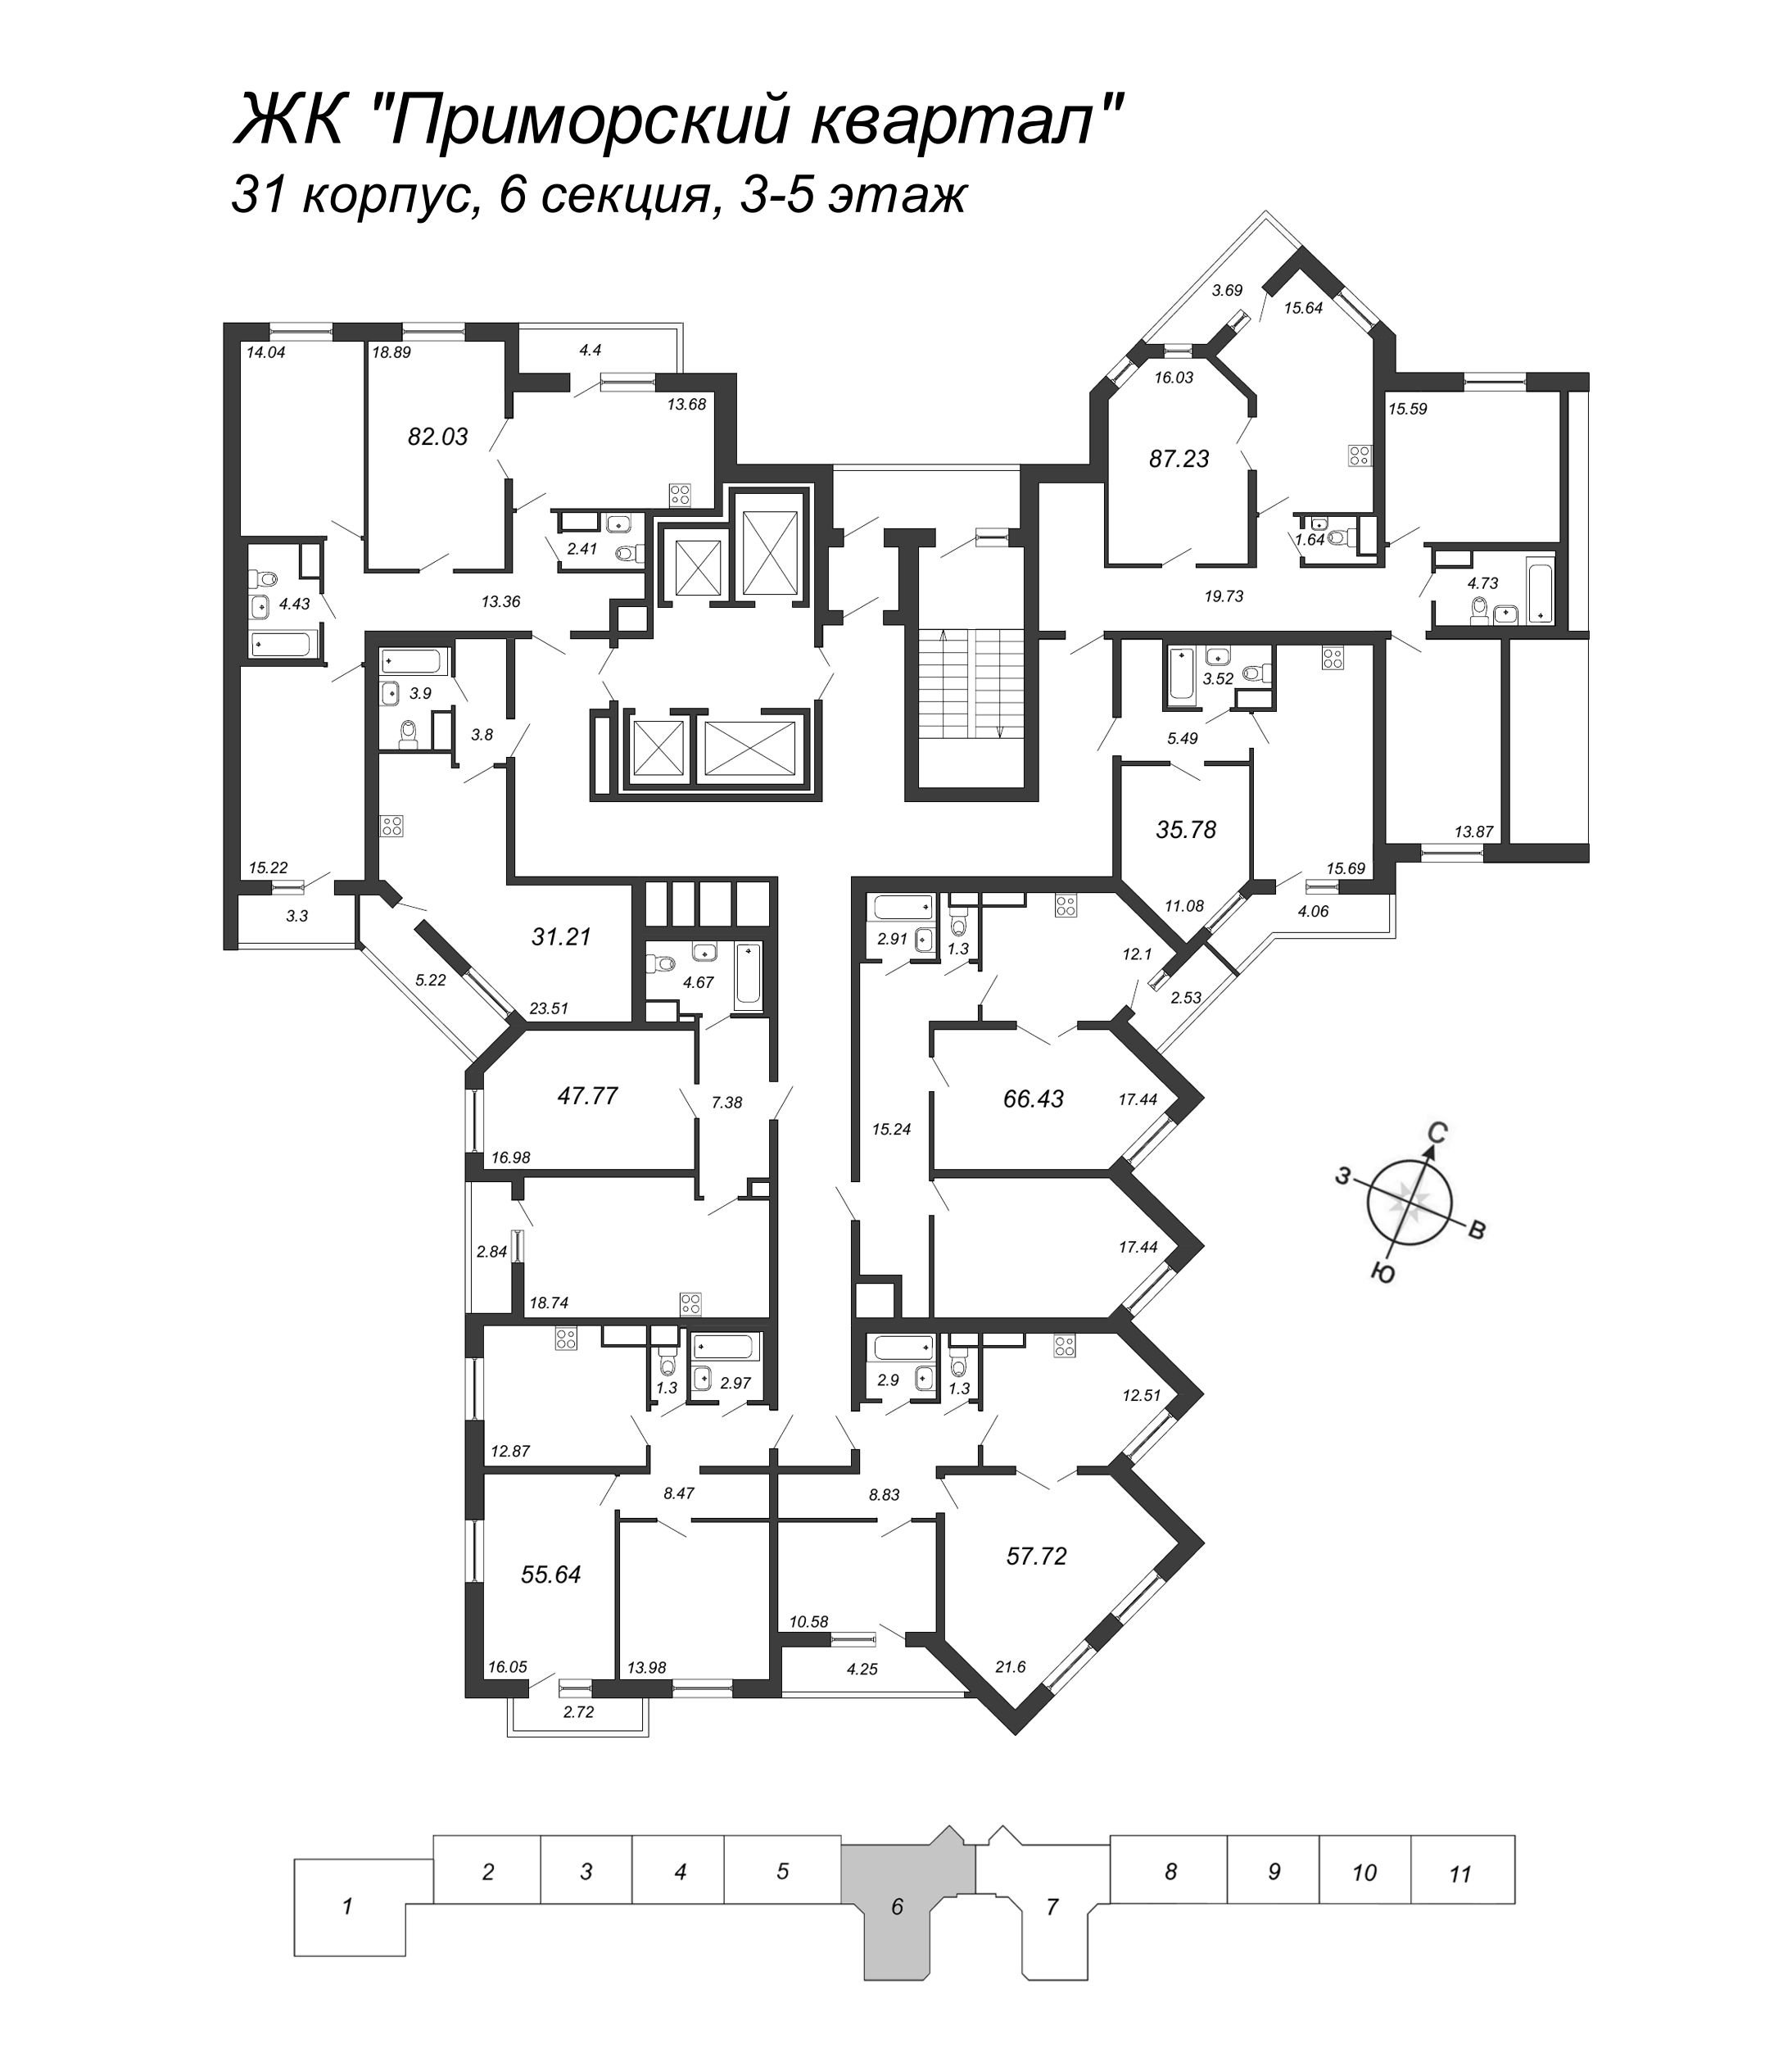 3-комнатная квартира, 82.03 м² в ЖК "Приморский квартал" - планировка этажа